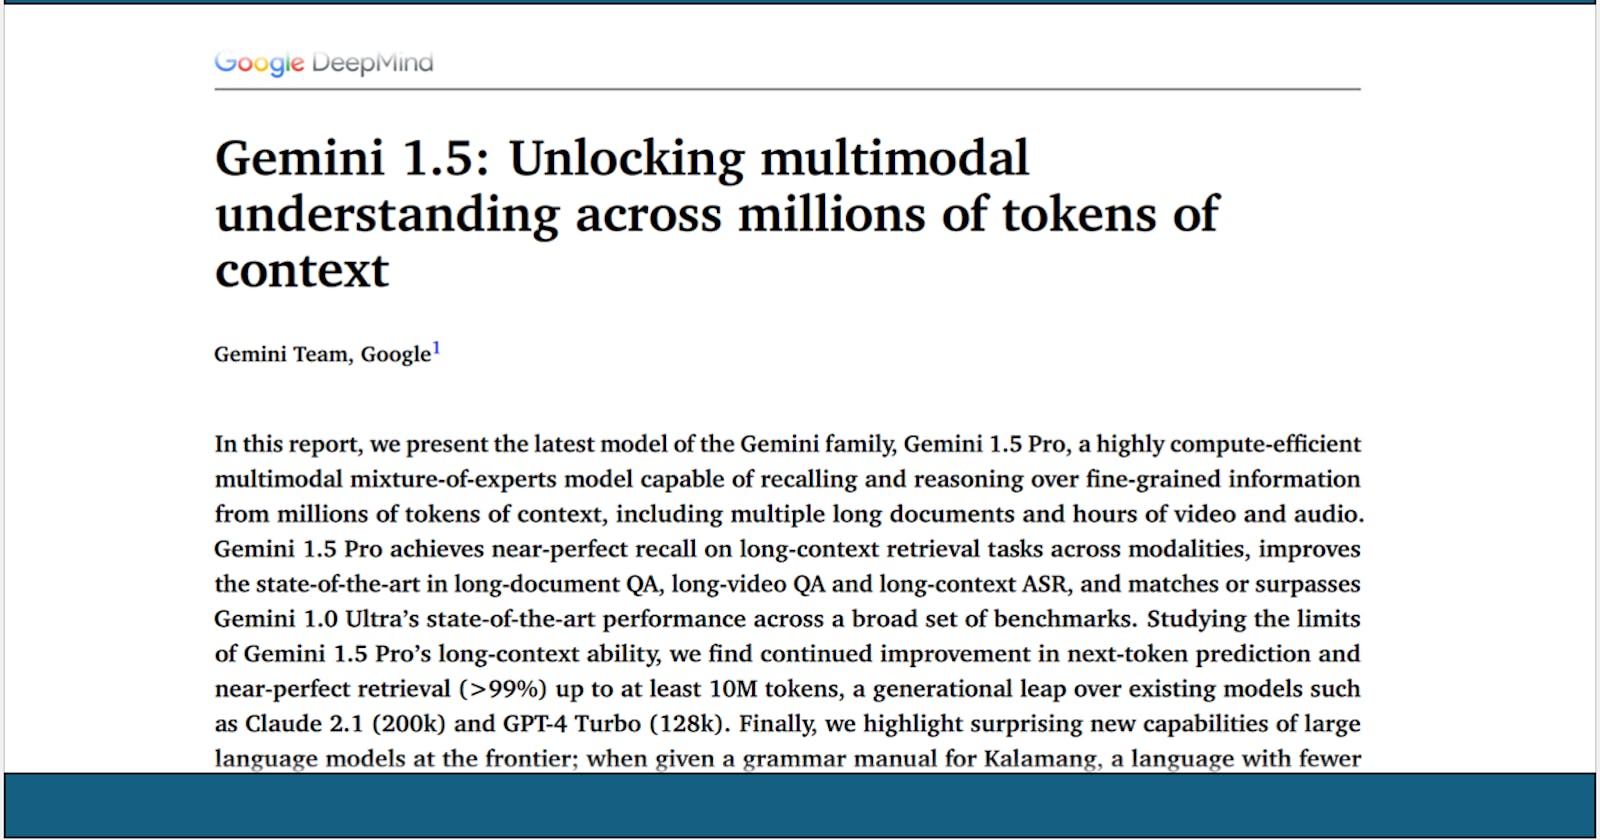 Gemini 1.5: Unlocking multimodal
understanding across millions of tokens of
context (Short Summary)